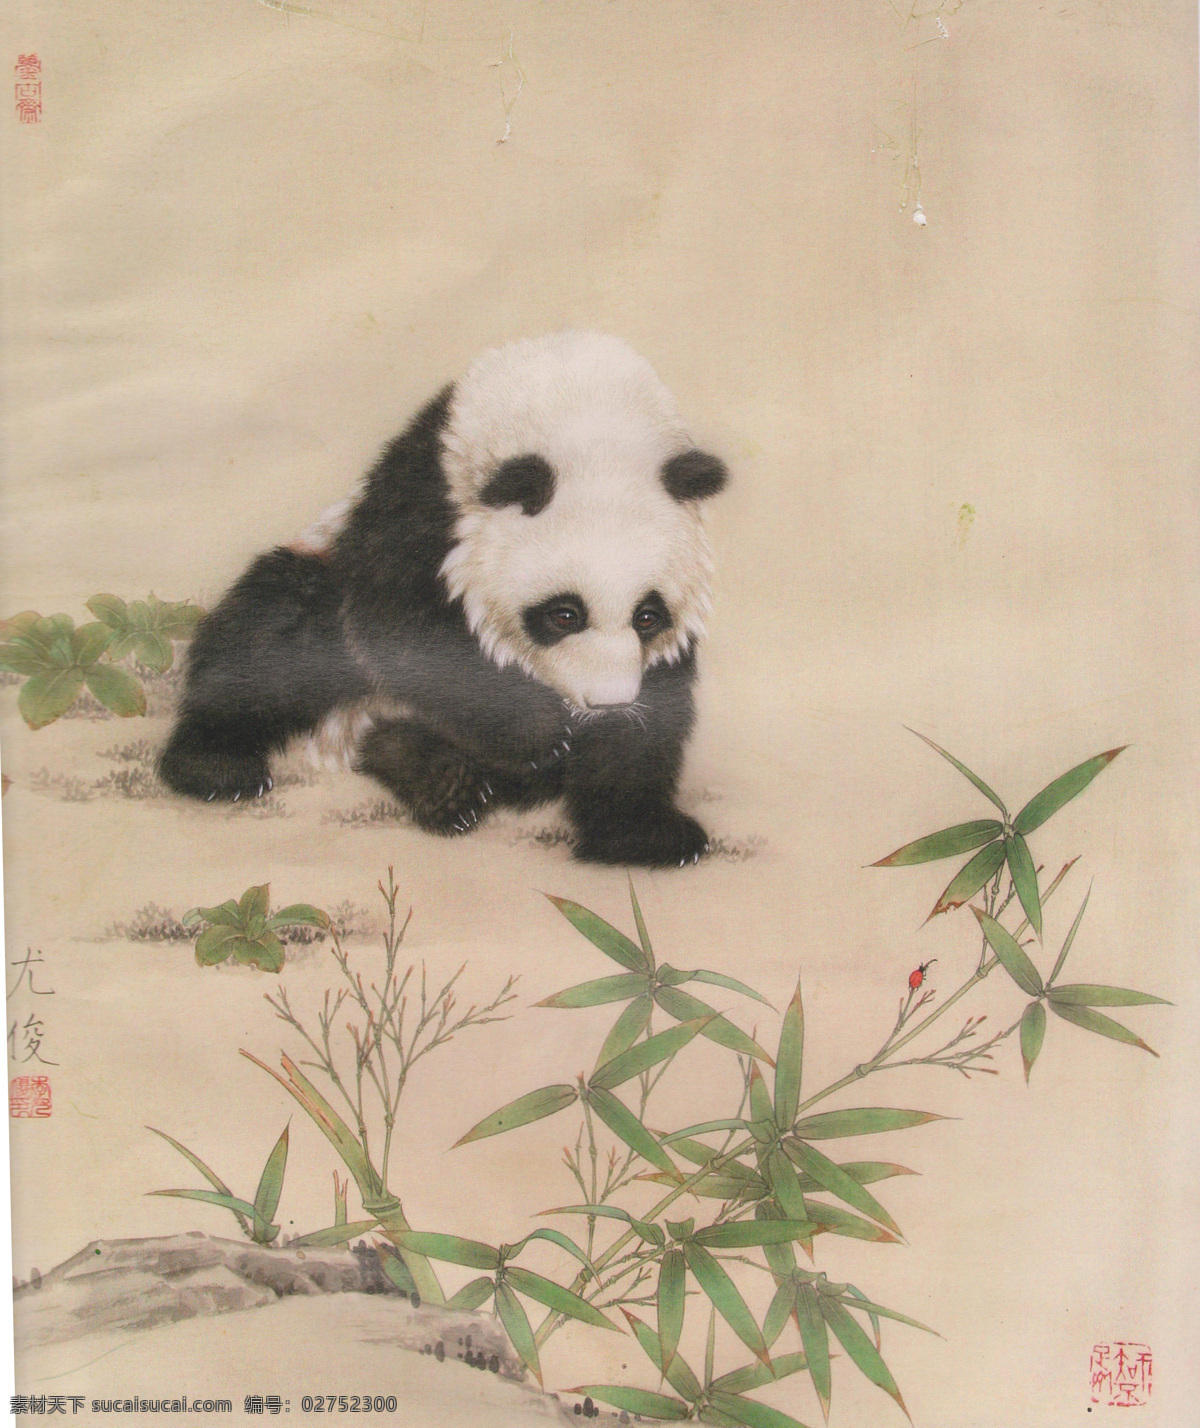 尤俊动画 工笔画 中国画 绘画 动物画 熊猫画 国宝 山水画 高清国画 尤俊动物画 绘画书法 文化艺术